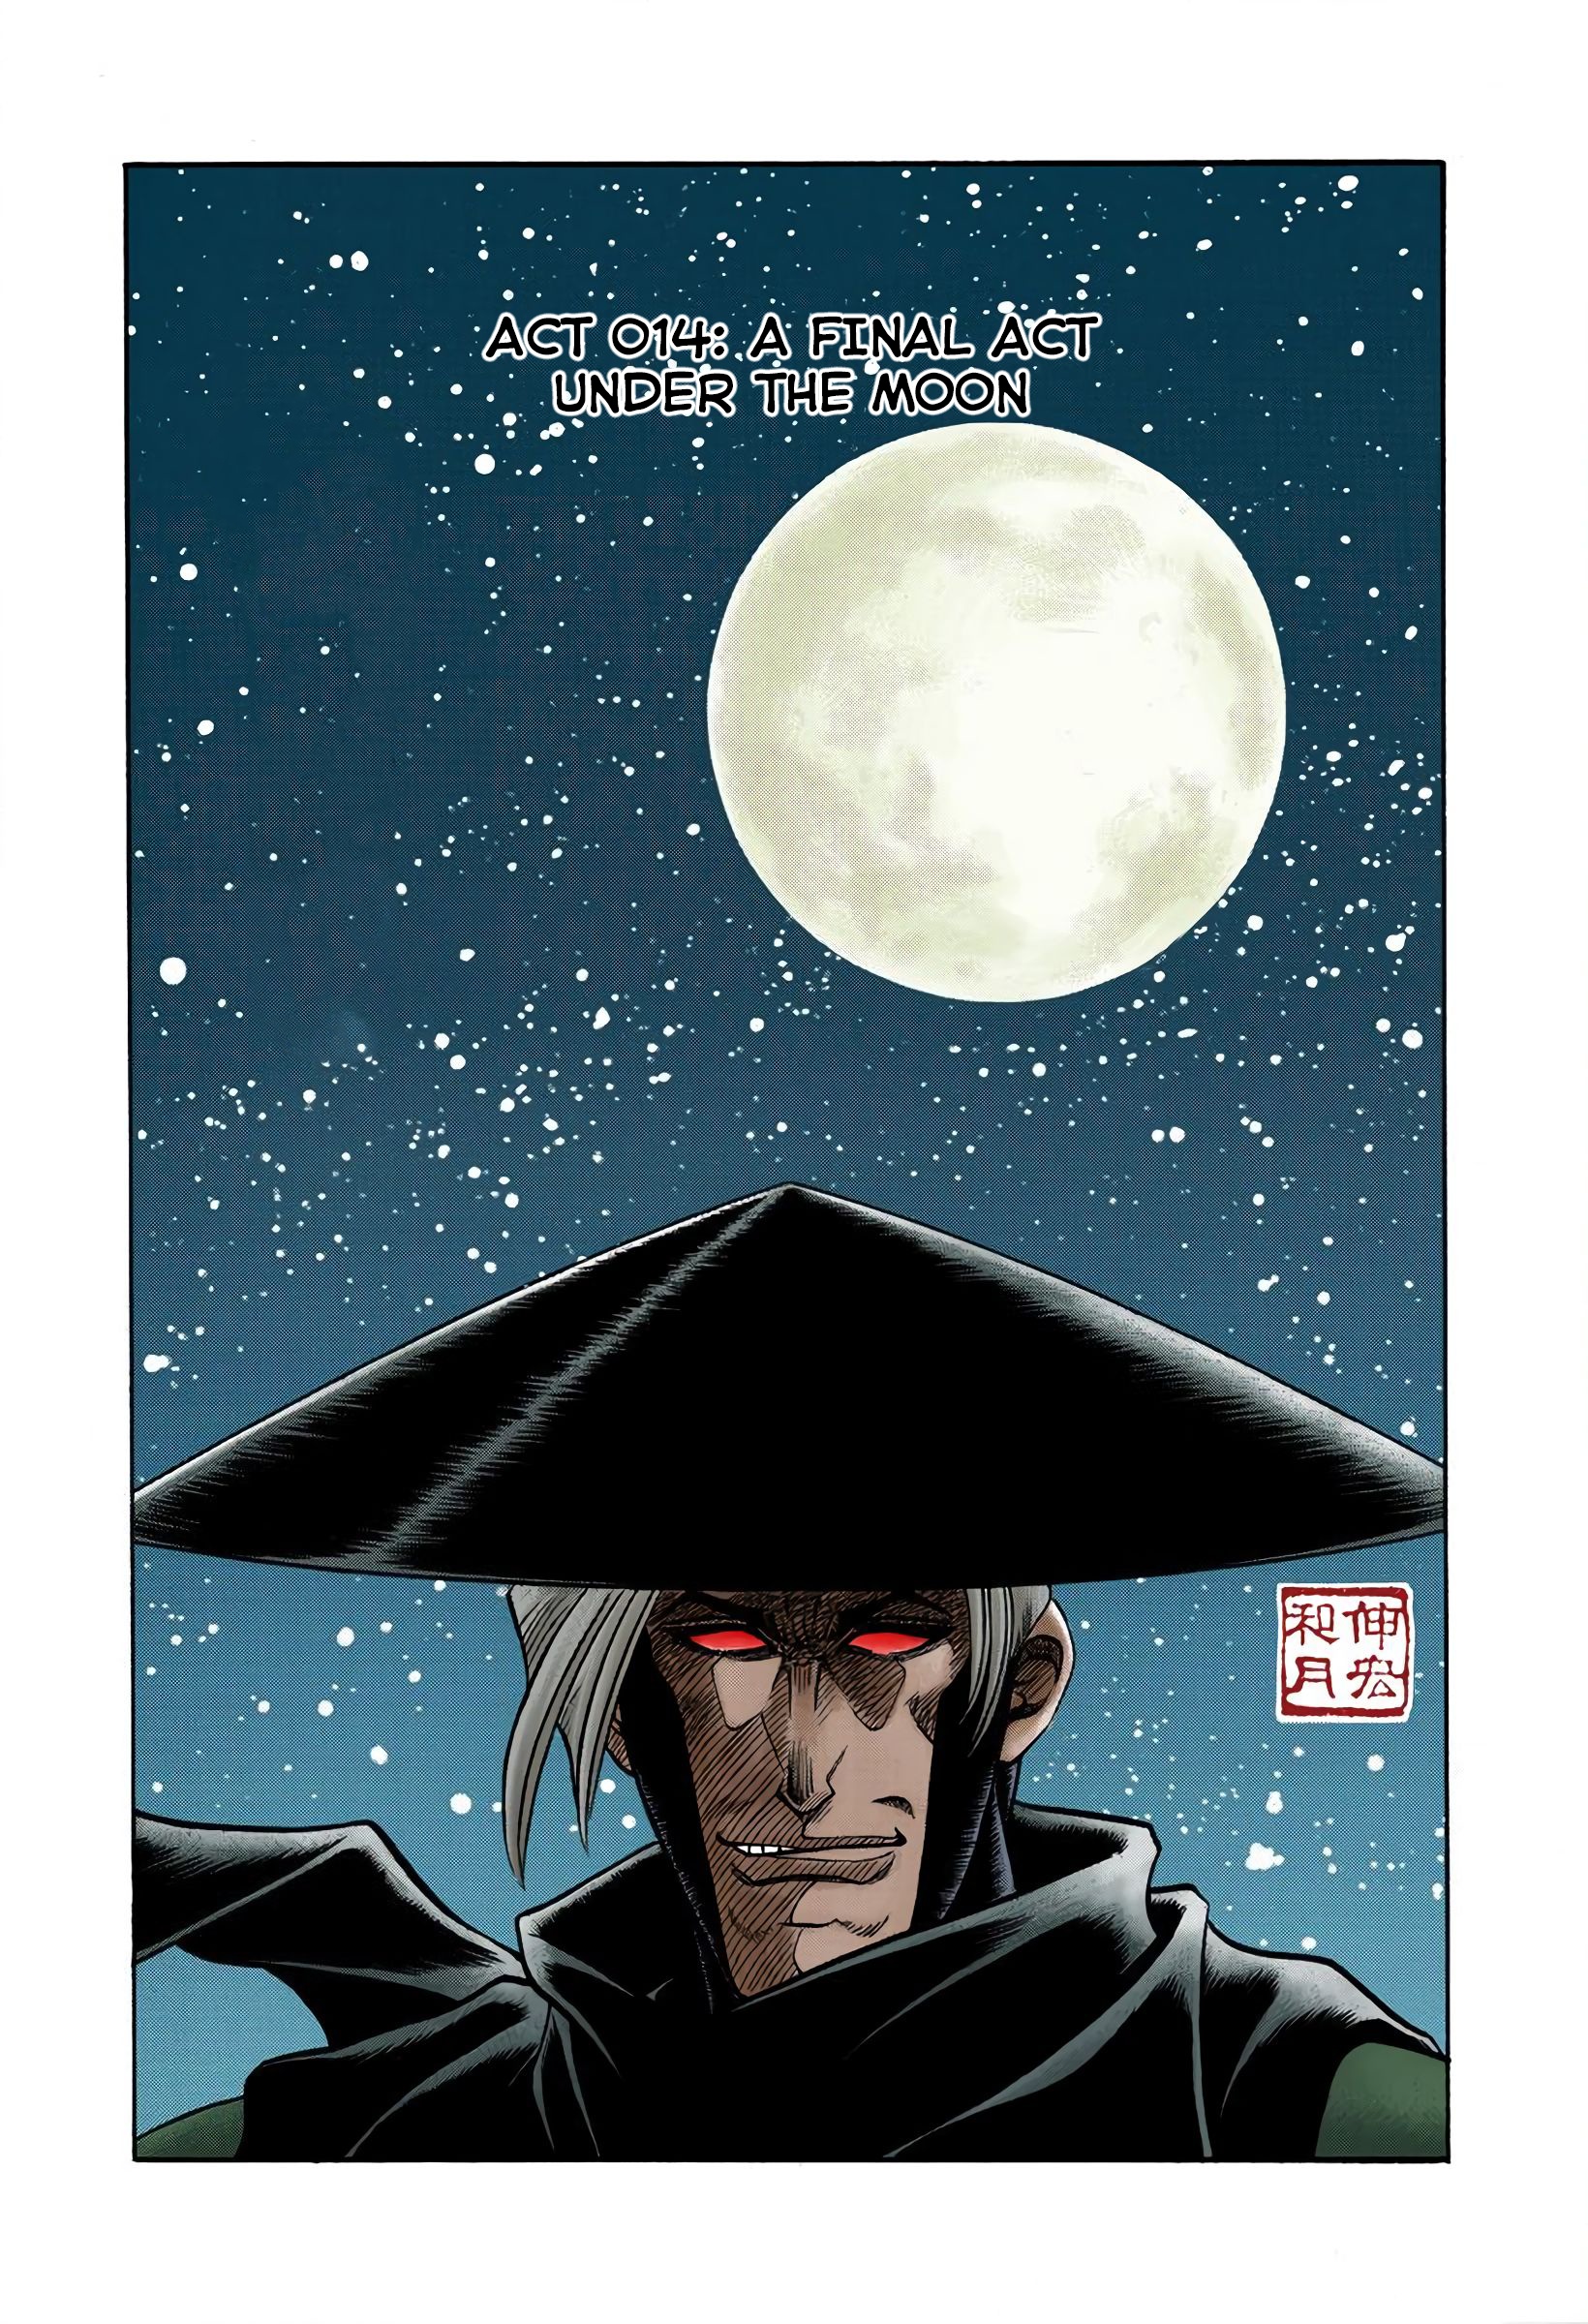 Rurouni Kenshin: Meiji Kenkaku Romantan - Digital Colored Comics Vol.2 Chapter 14